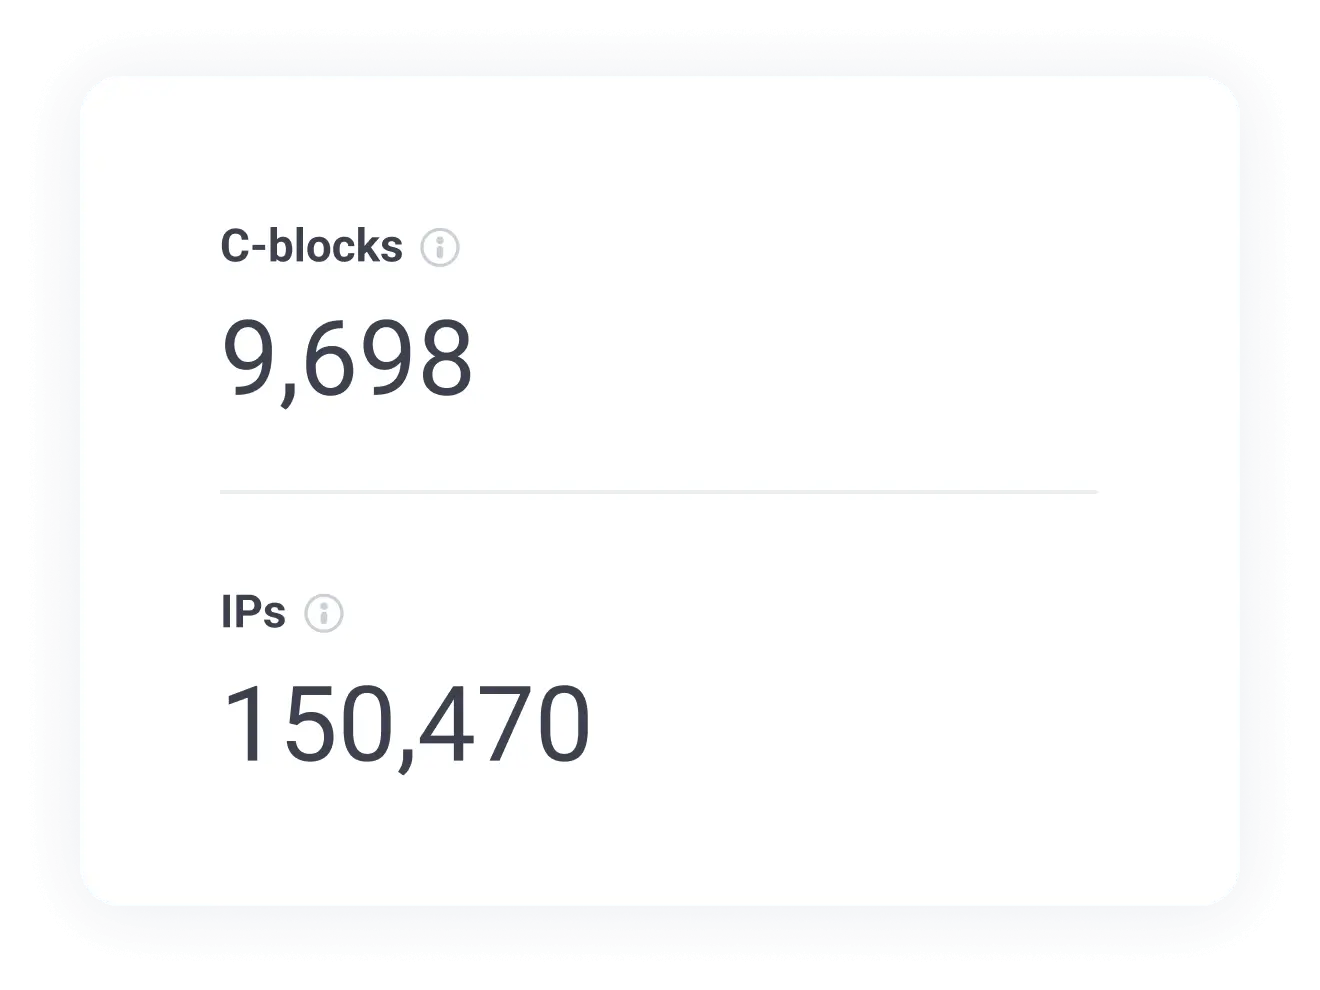 Vérifiez le nombre d'adresses IP uniques et de blocs C